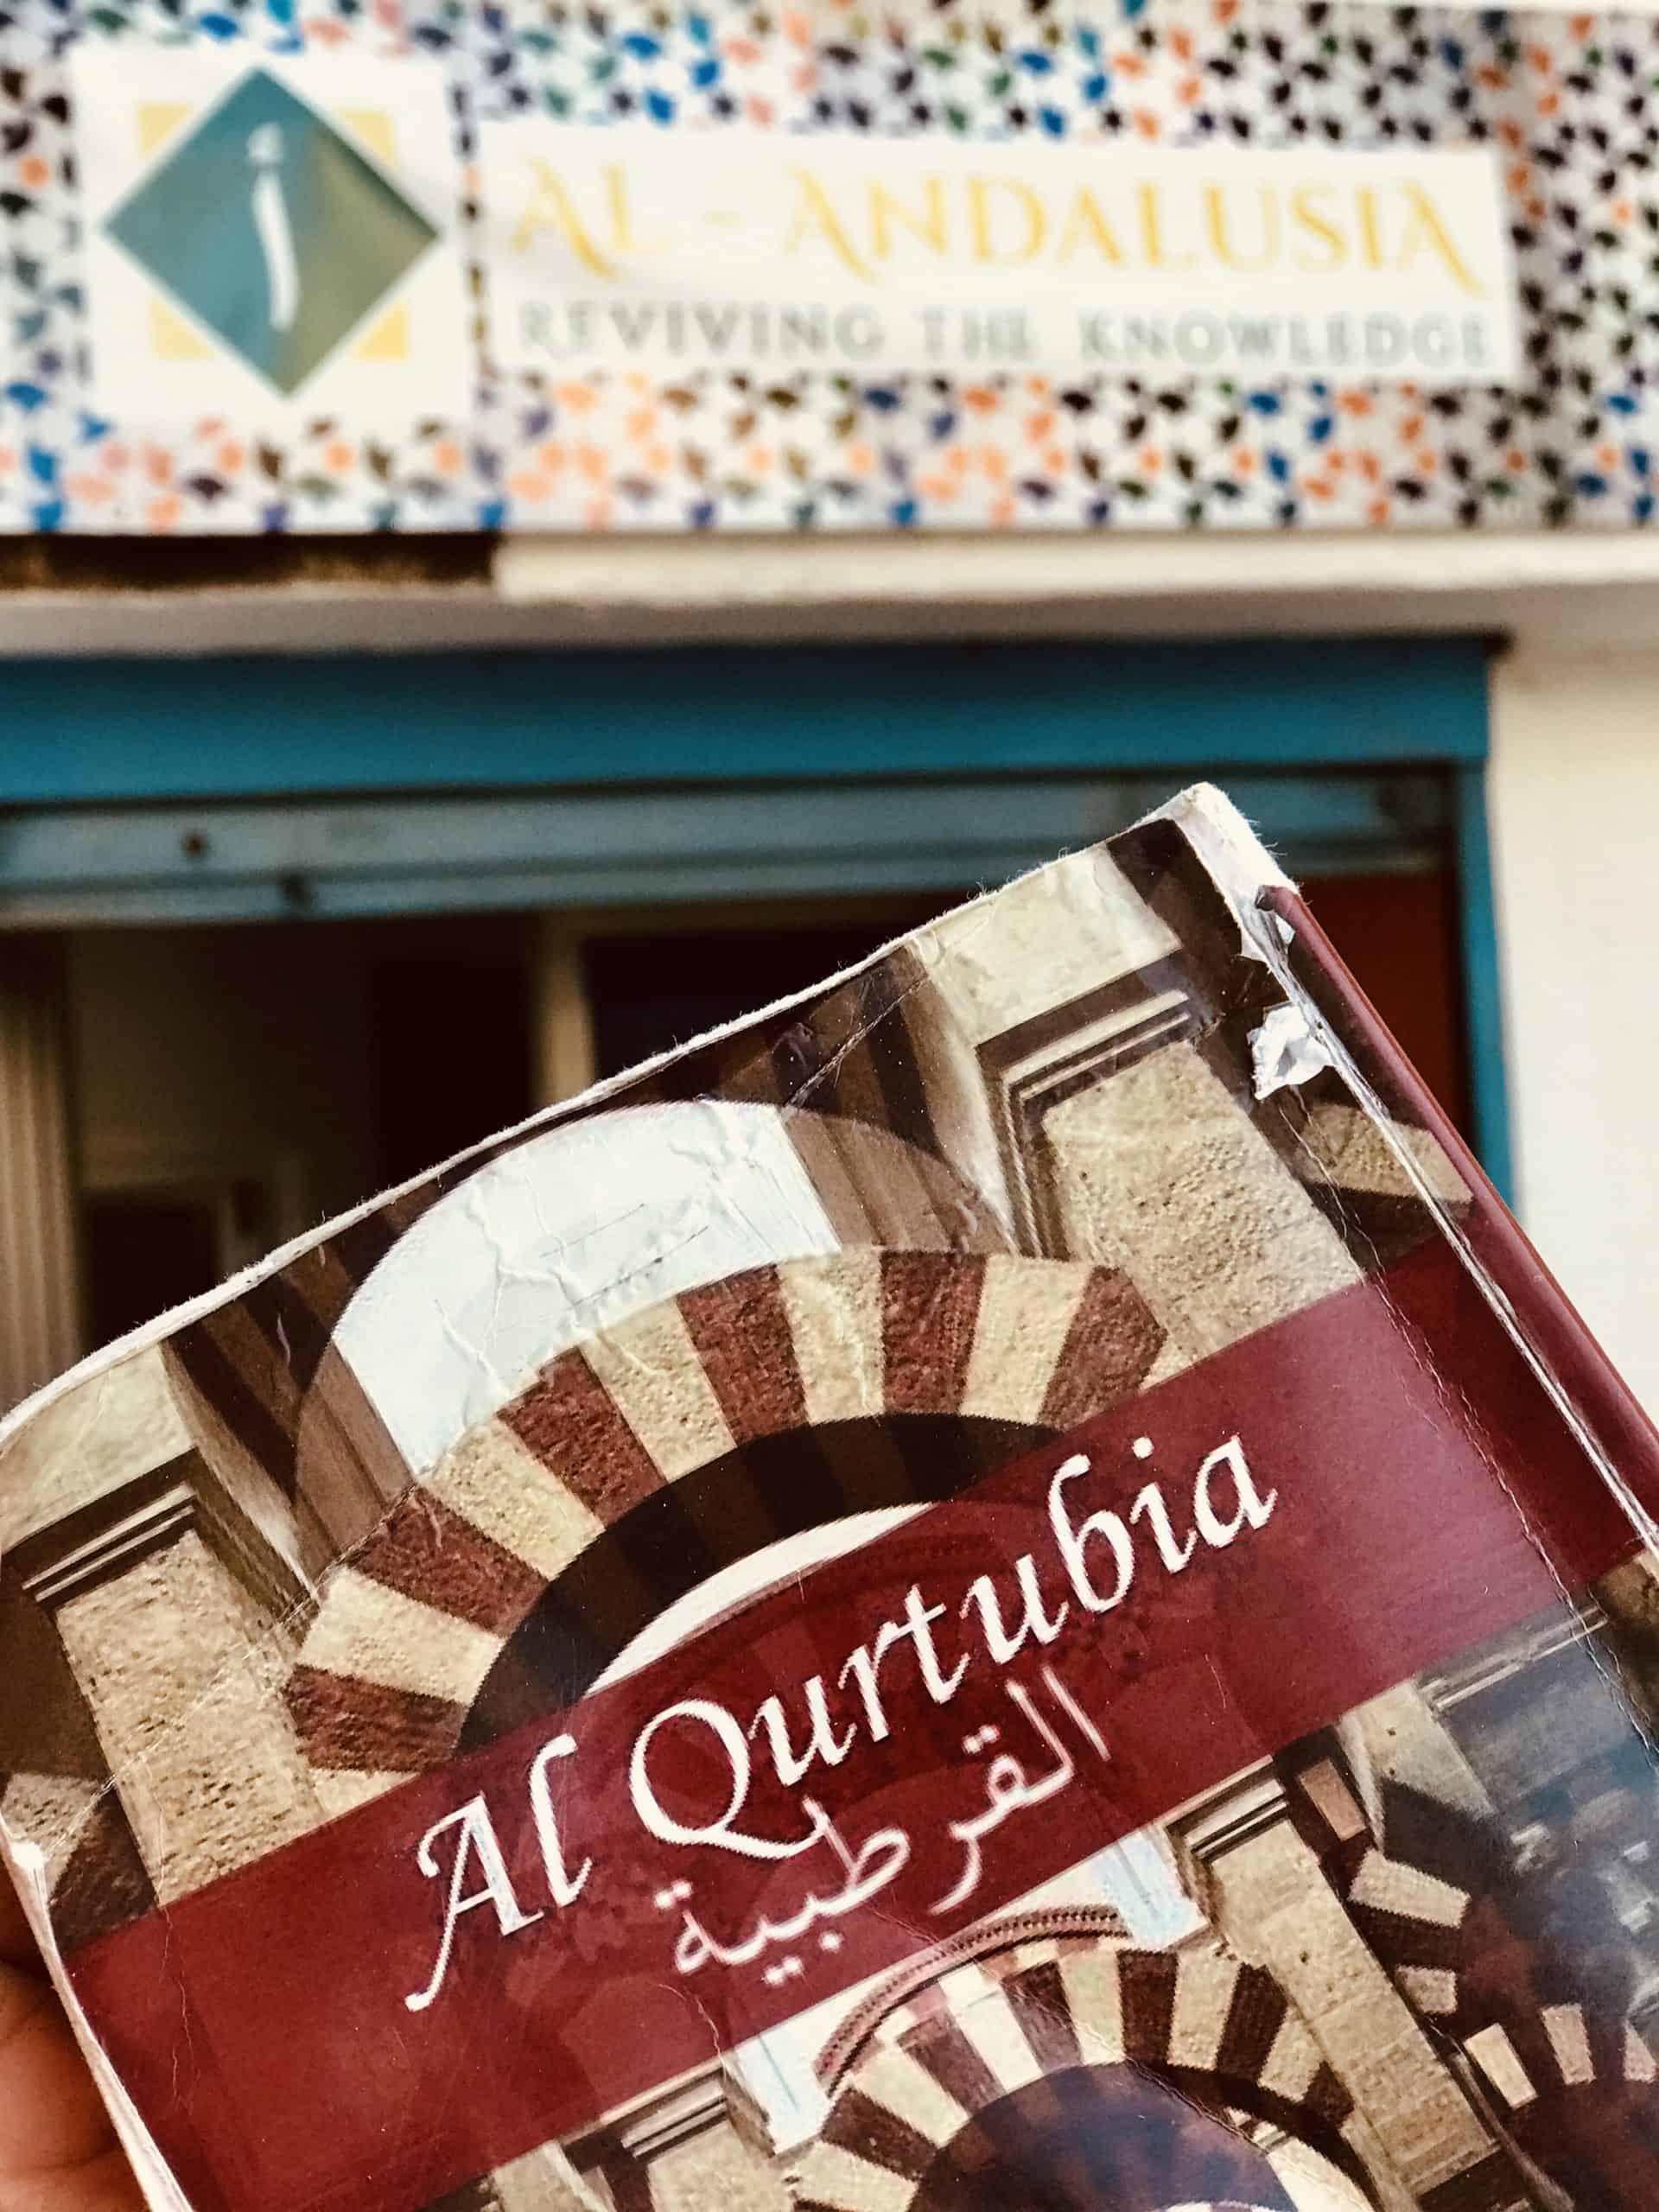 Al-Qurtubia